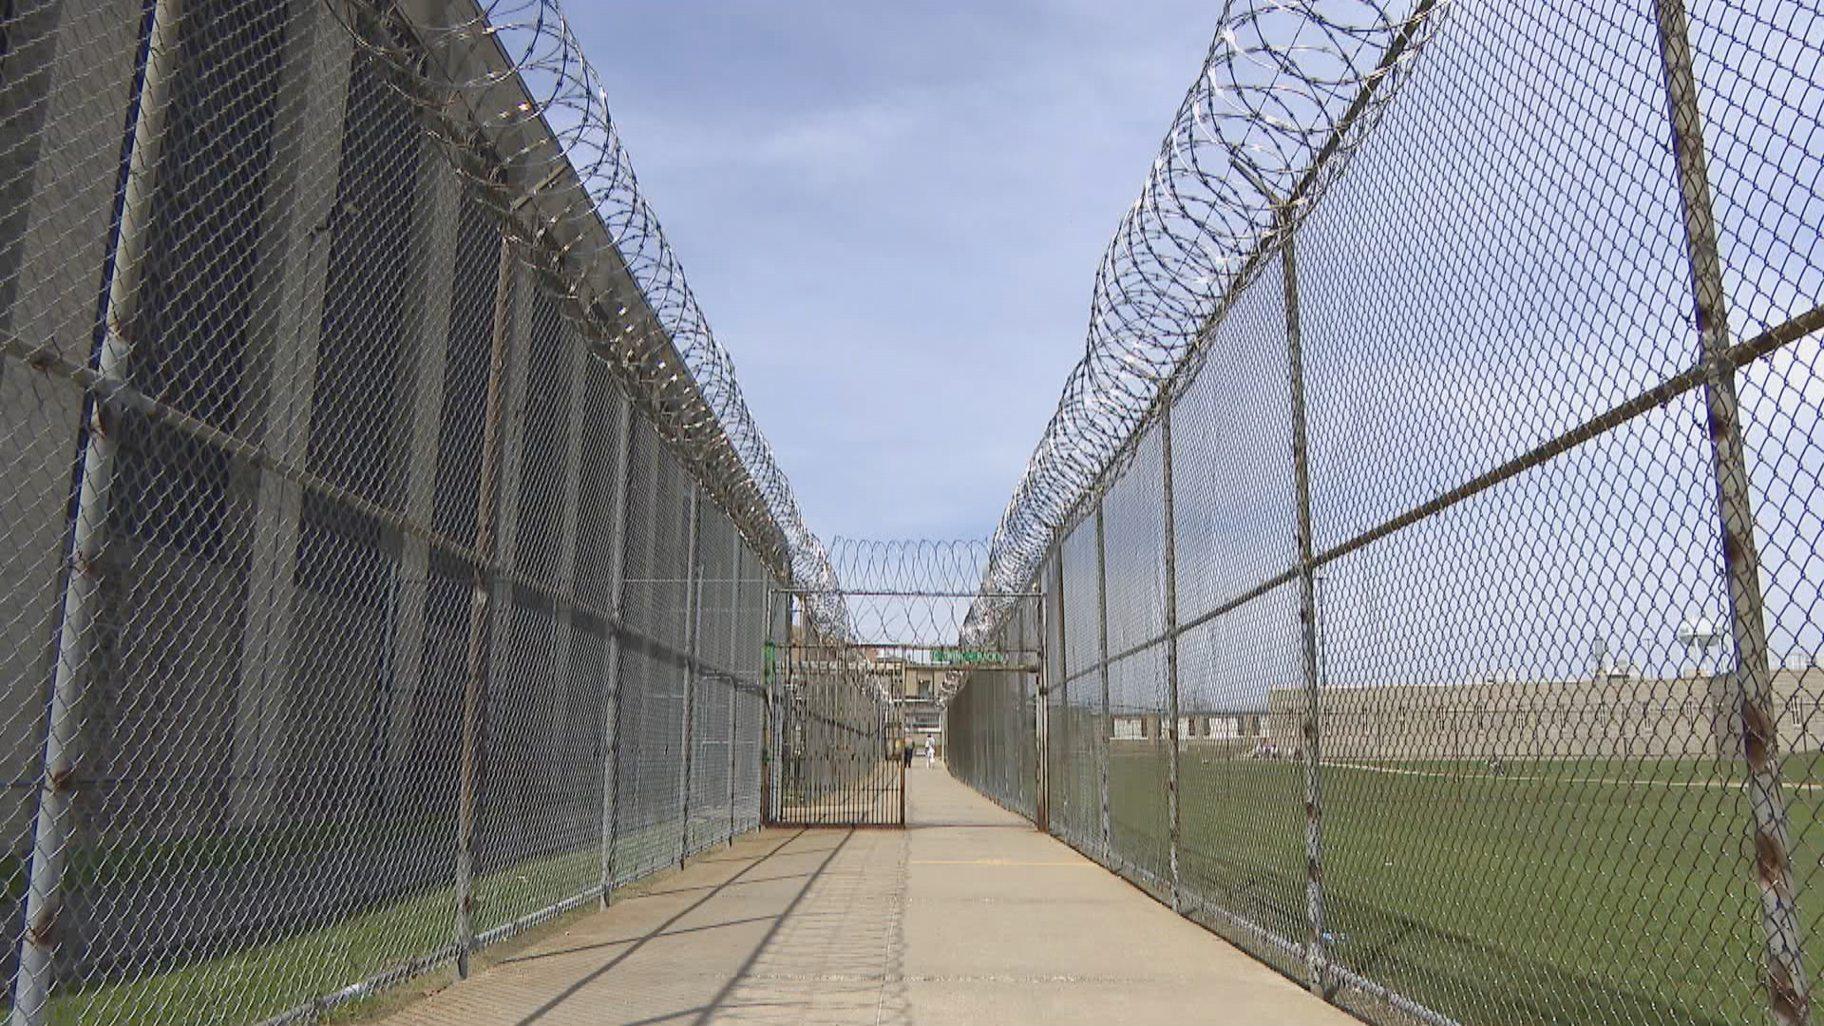 Stateville Correctional Center. (WTTW News)